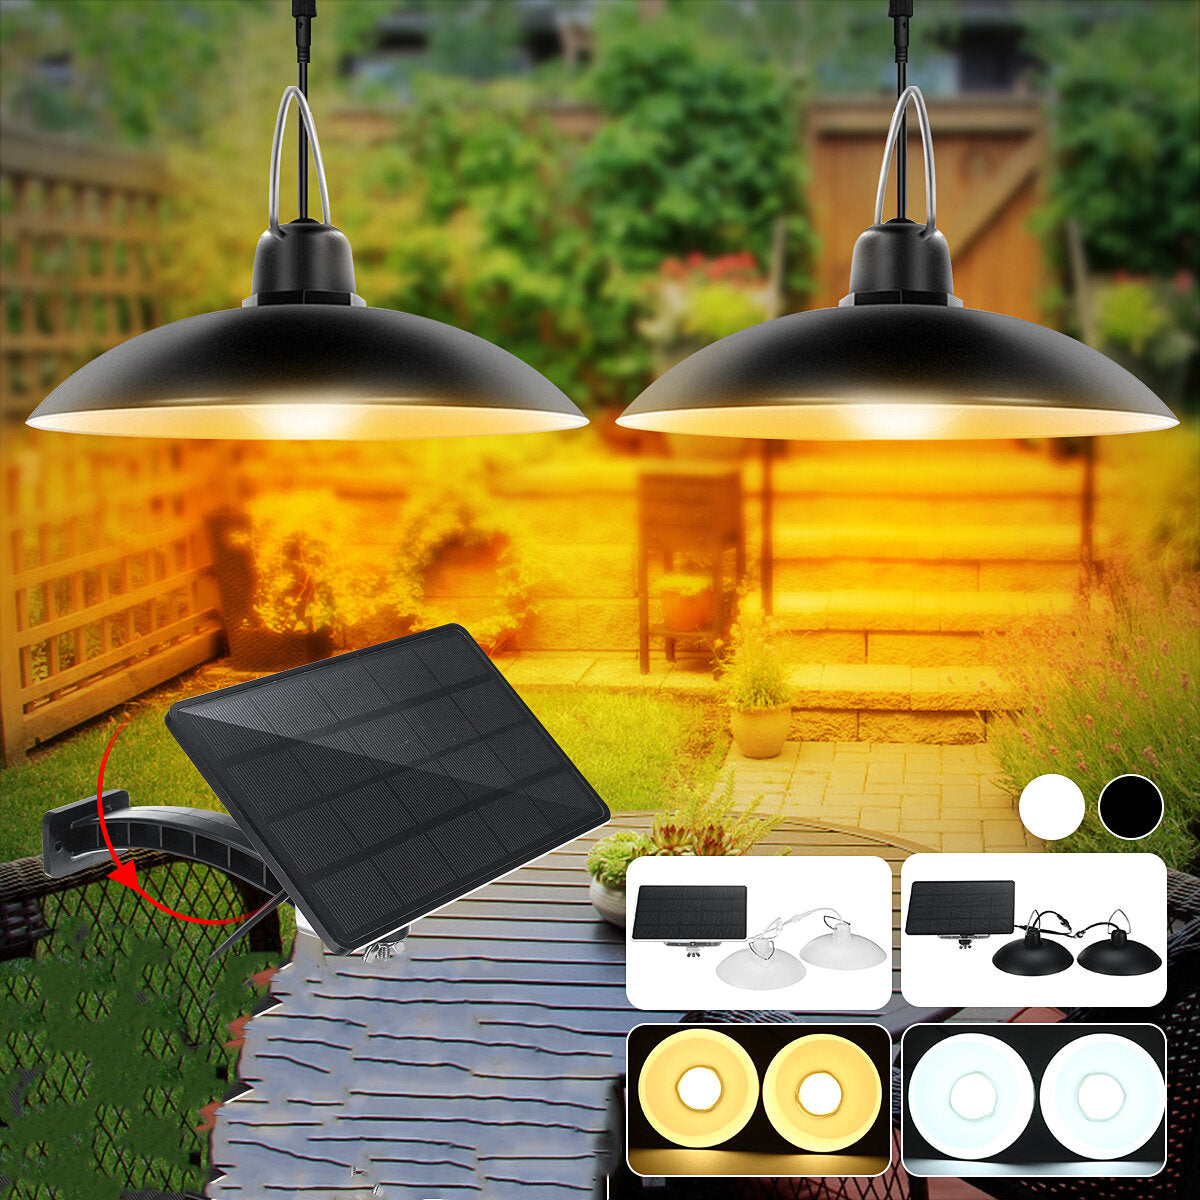 double head led solar light ip65 waterdichte outdoor garden hanglamp voor home park street yard